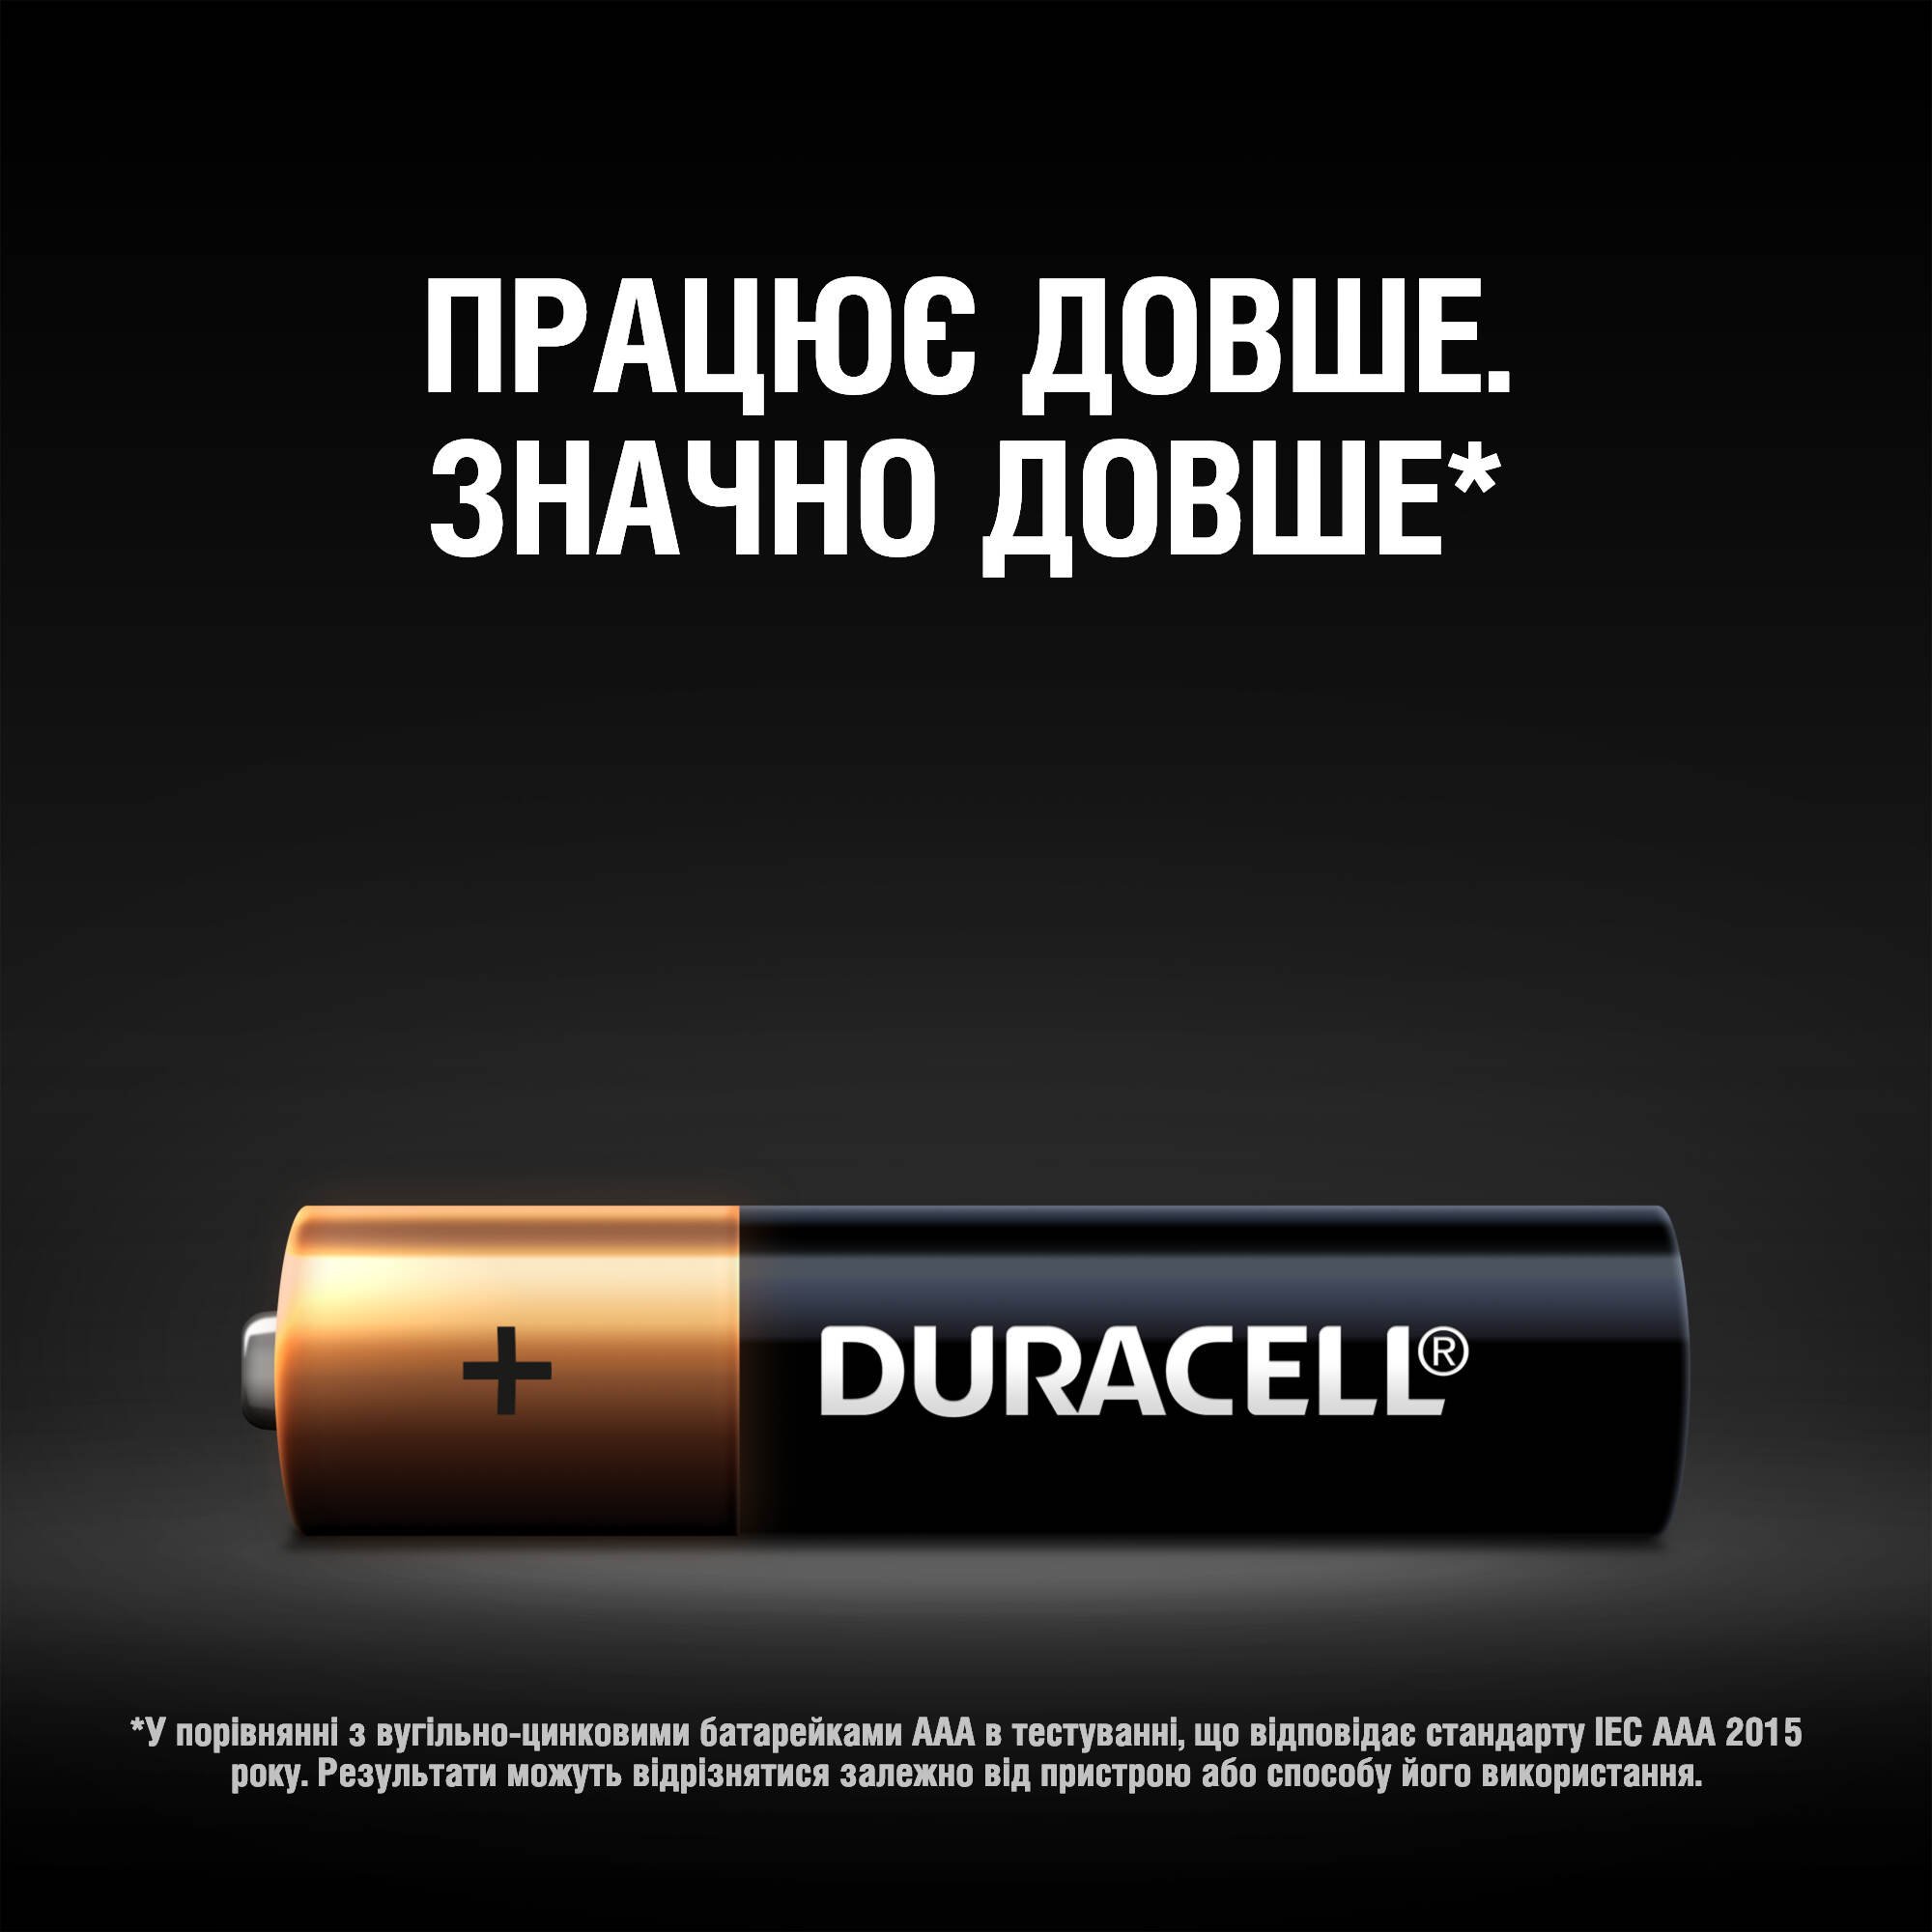 Лужні батарейки мізинчикові Duracell 1,5 V AAA LR03/MN2400, 2 шт. (706007) - фото 4